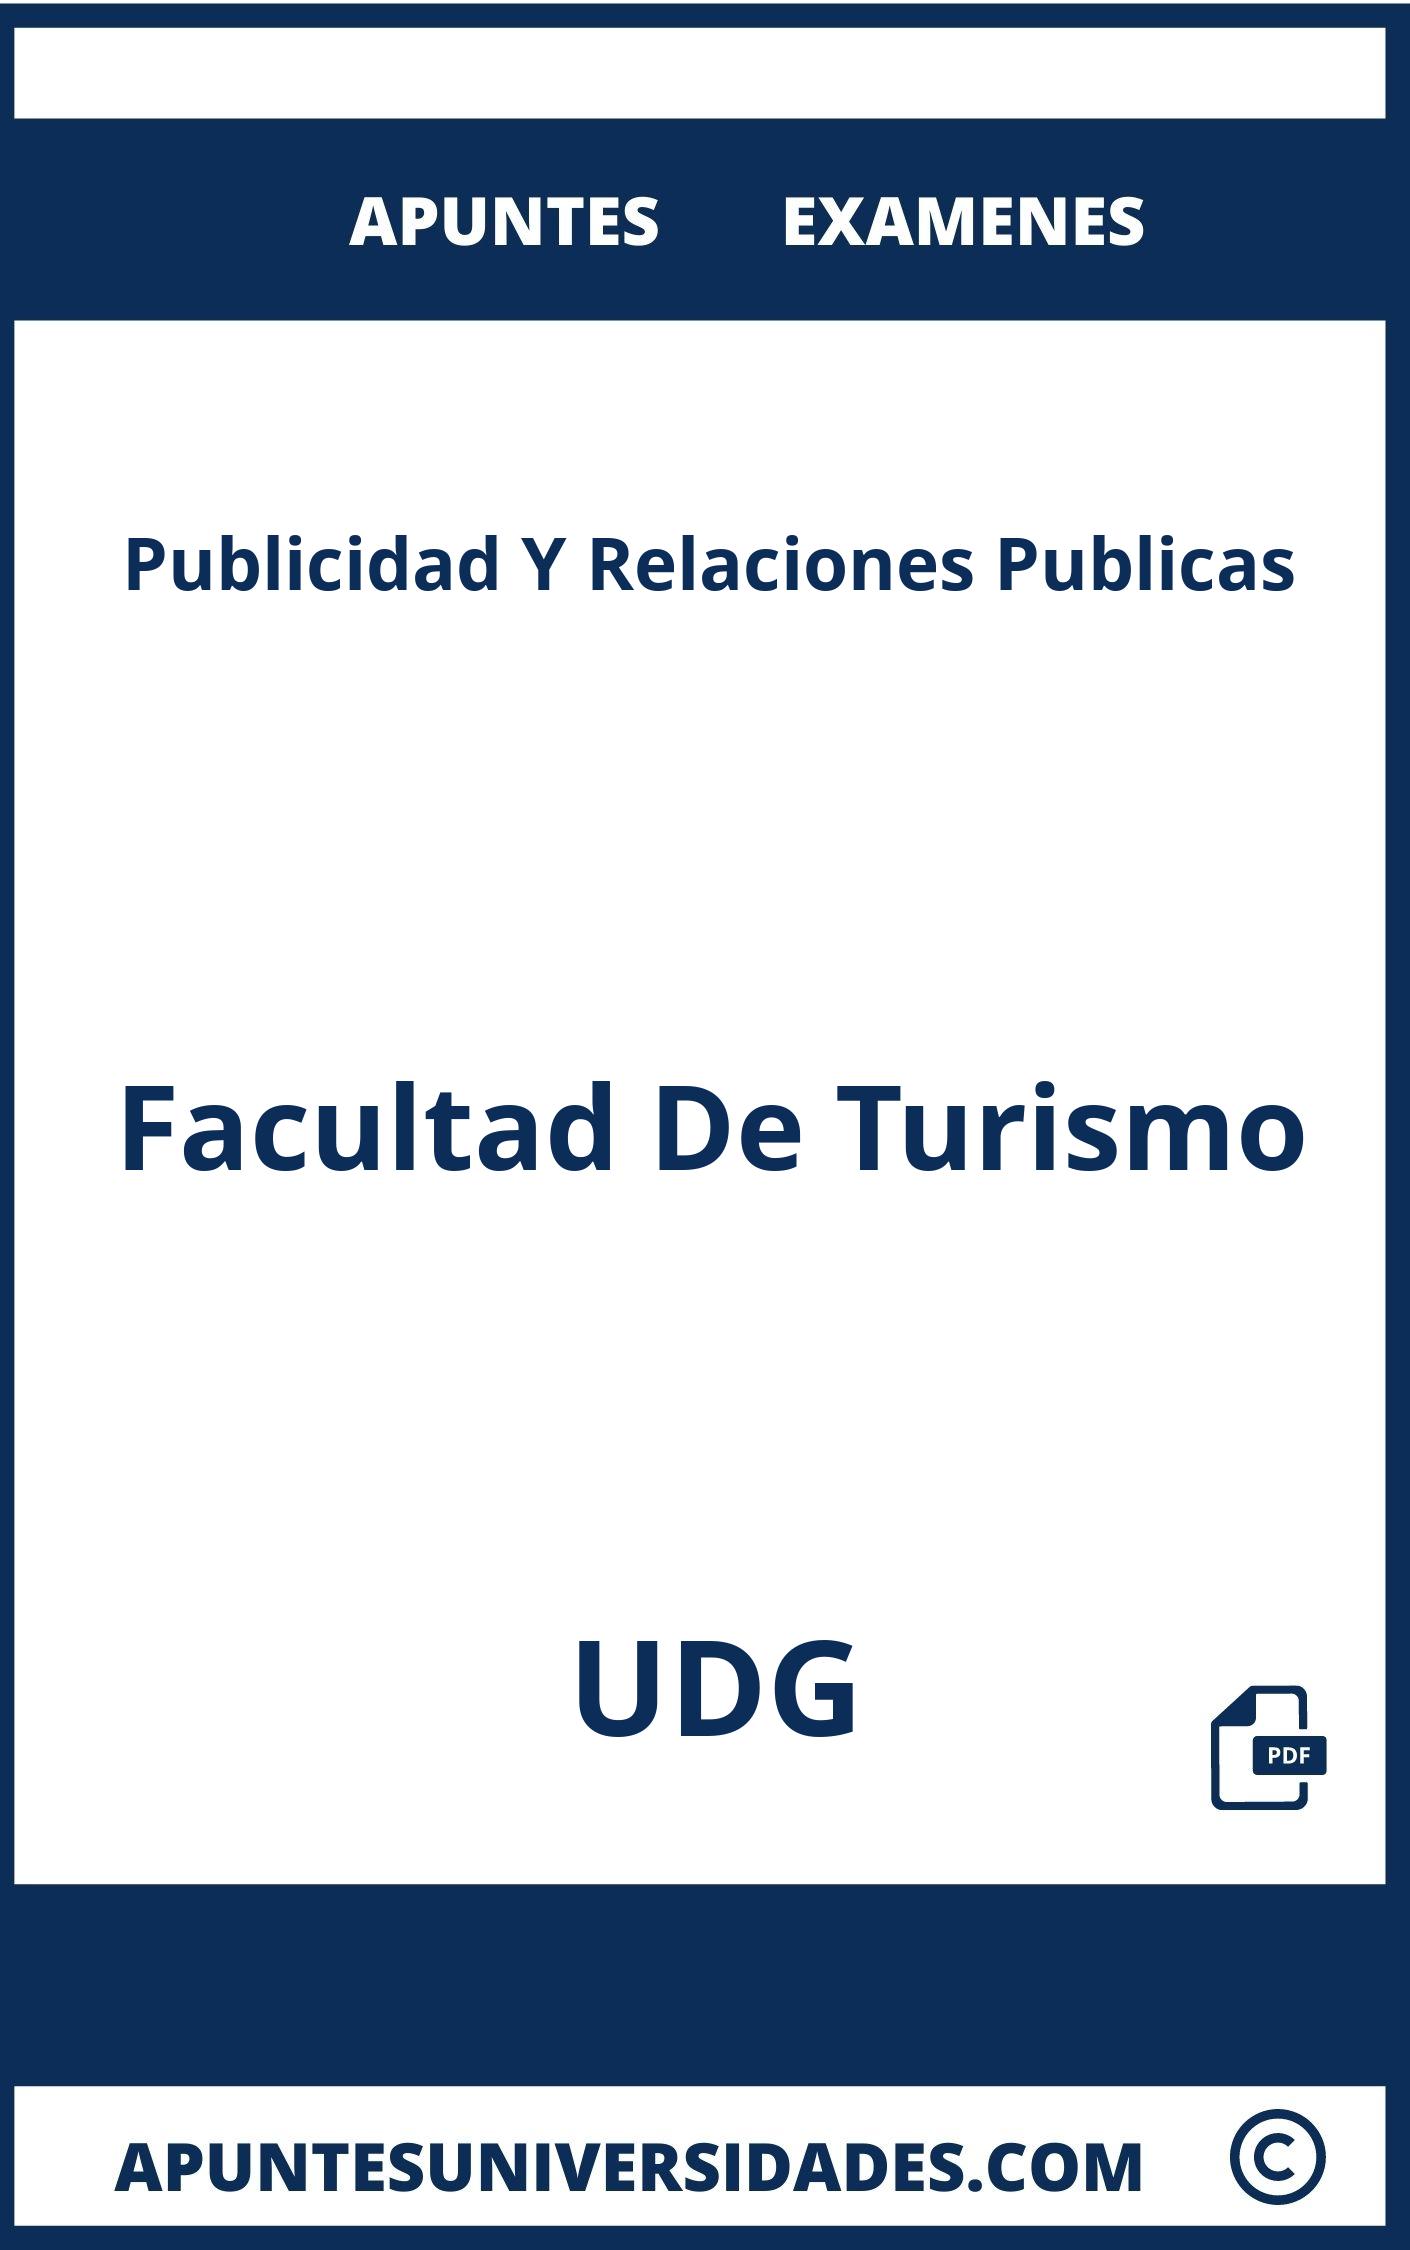 Apuntes Publicidad Y Relaciones Publicas UDG y Examenes